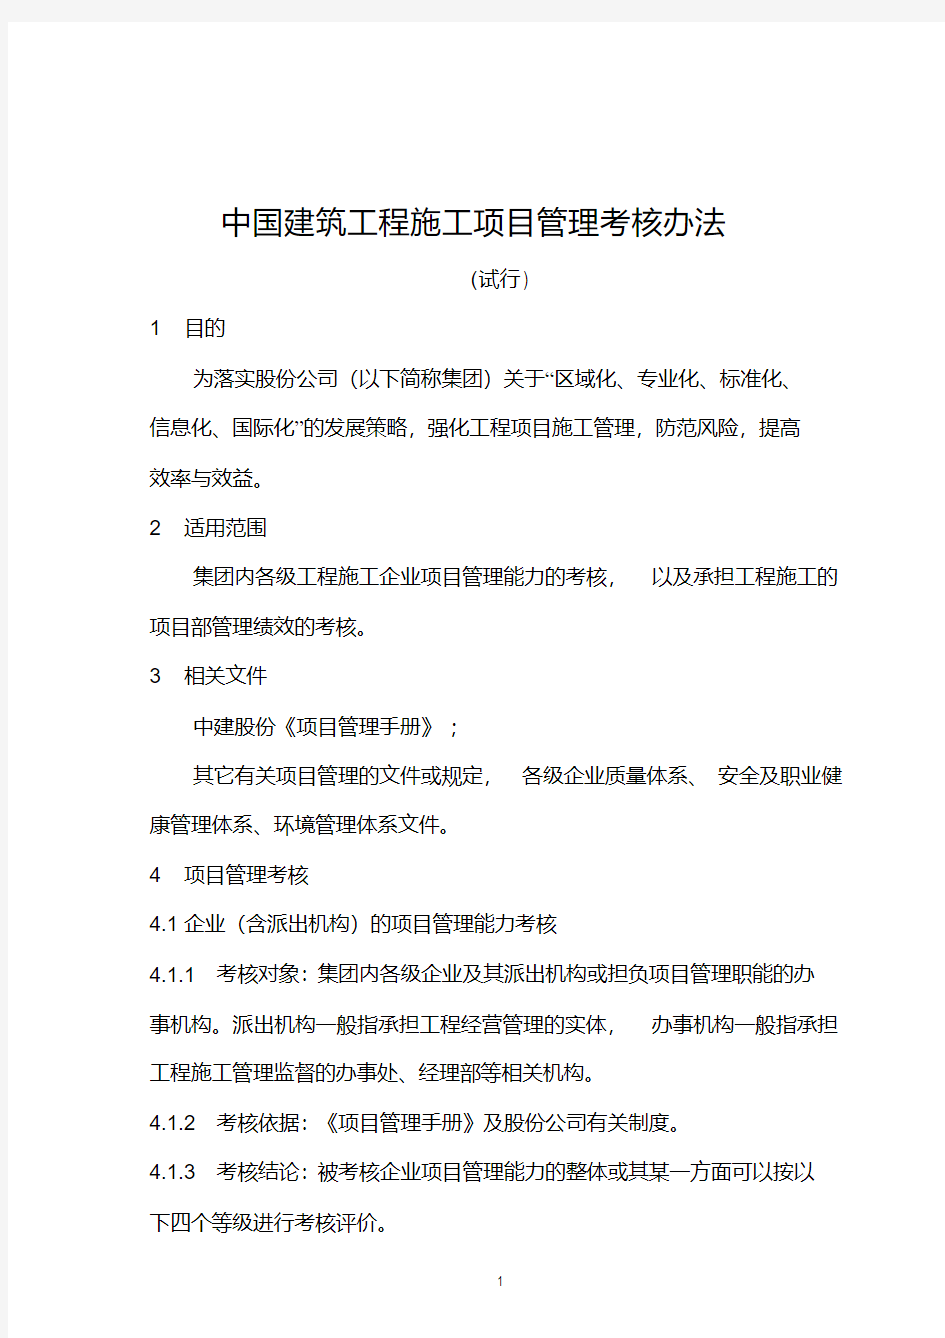 中国建筑工程施工项目管理考核办法及表格(20200420183957)